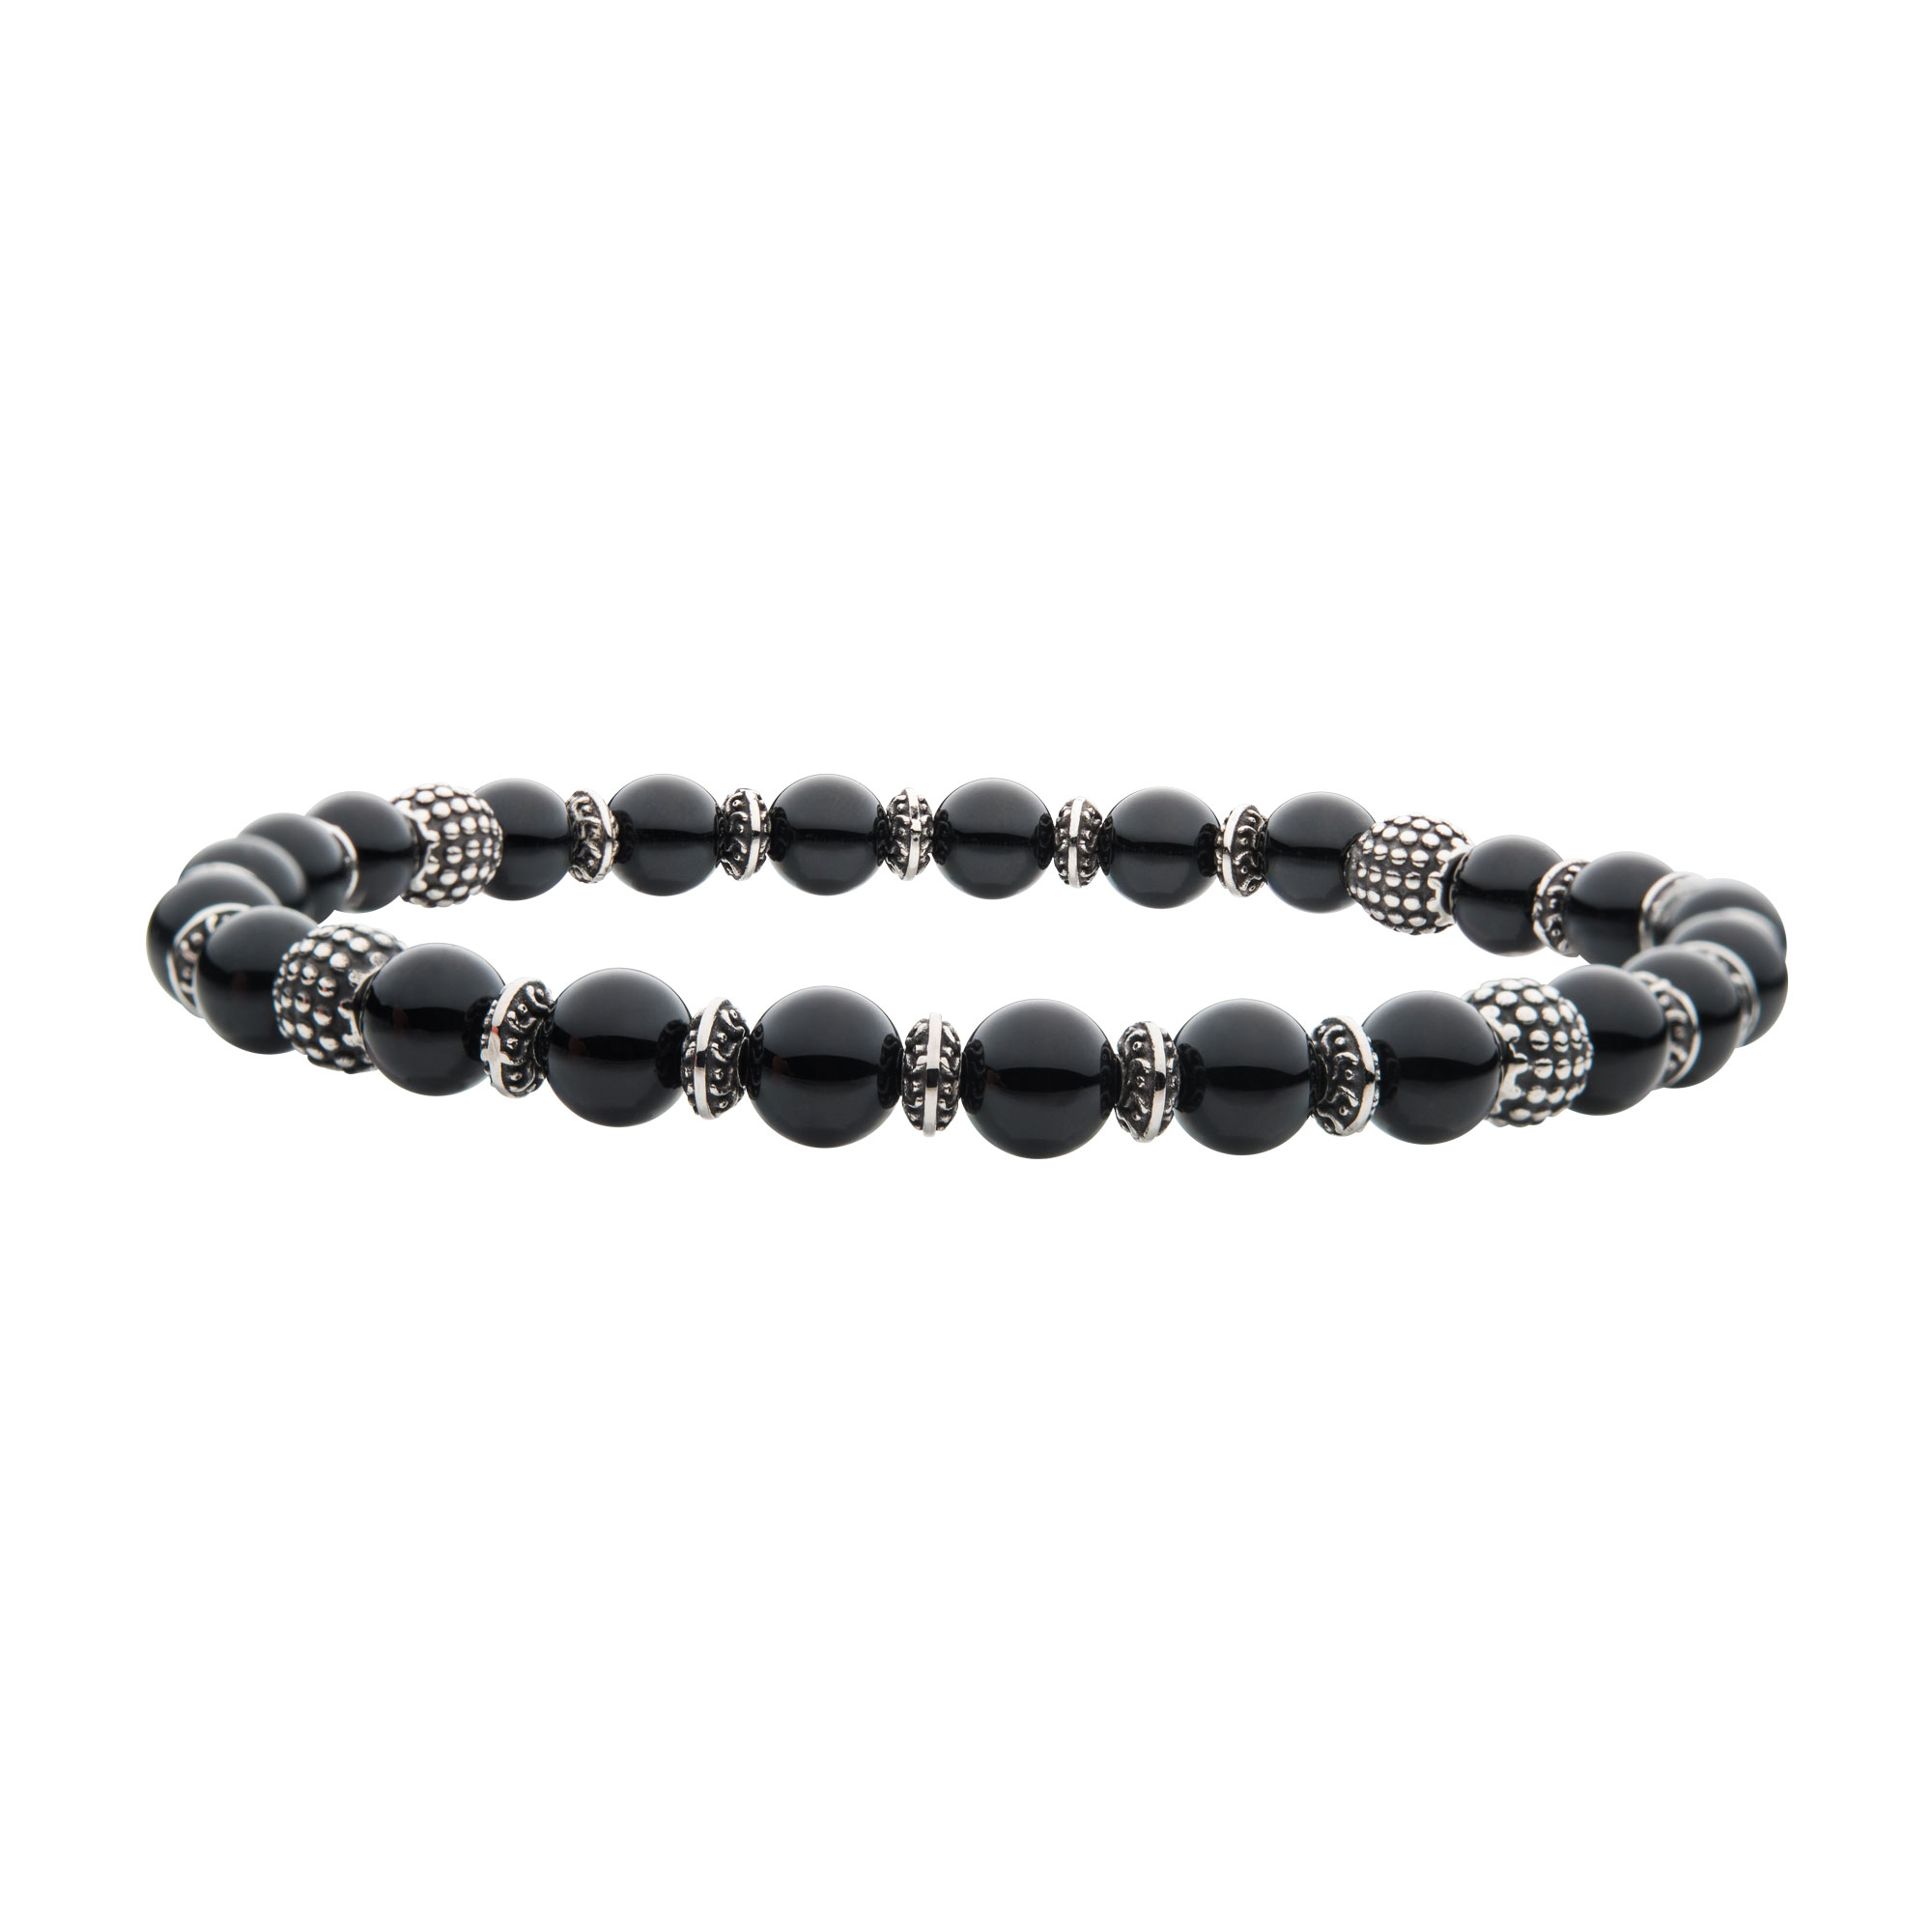 Black Agate Stones with Black Oxidized Beads Bracelet Glatz Jewelry Aliquippa, PA